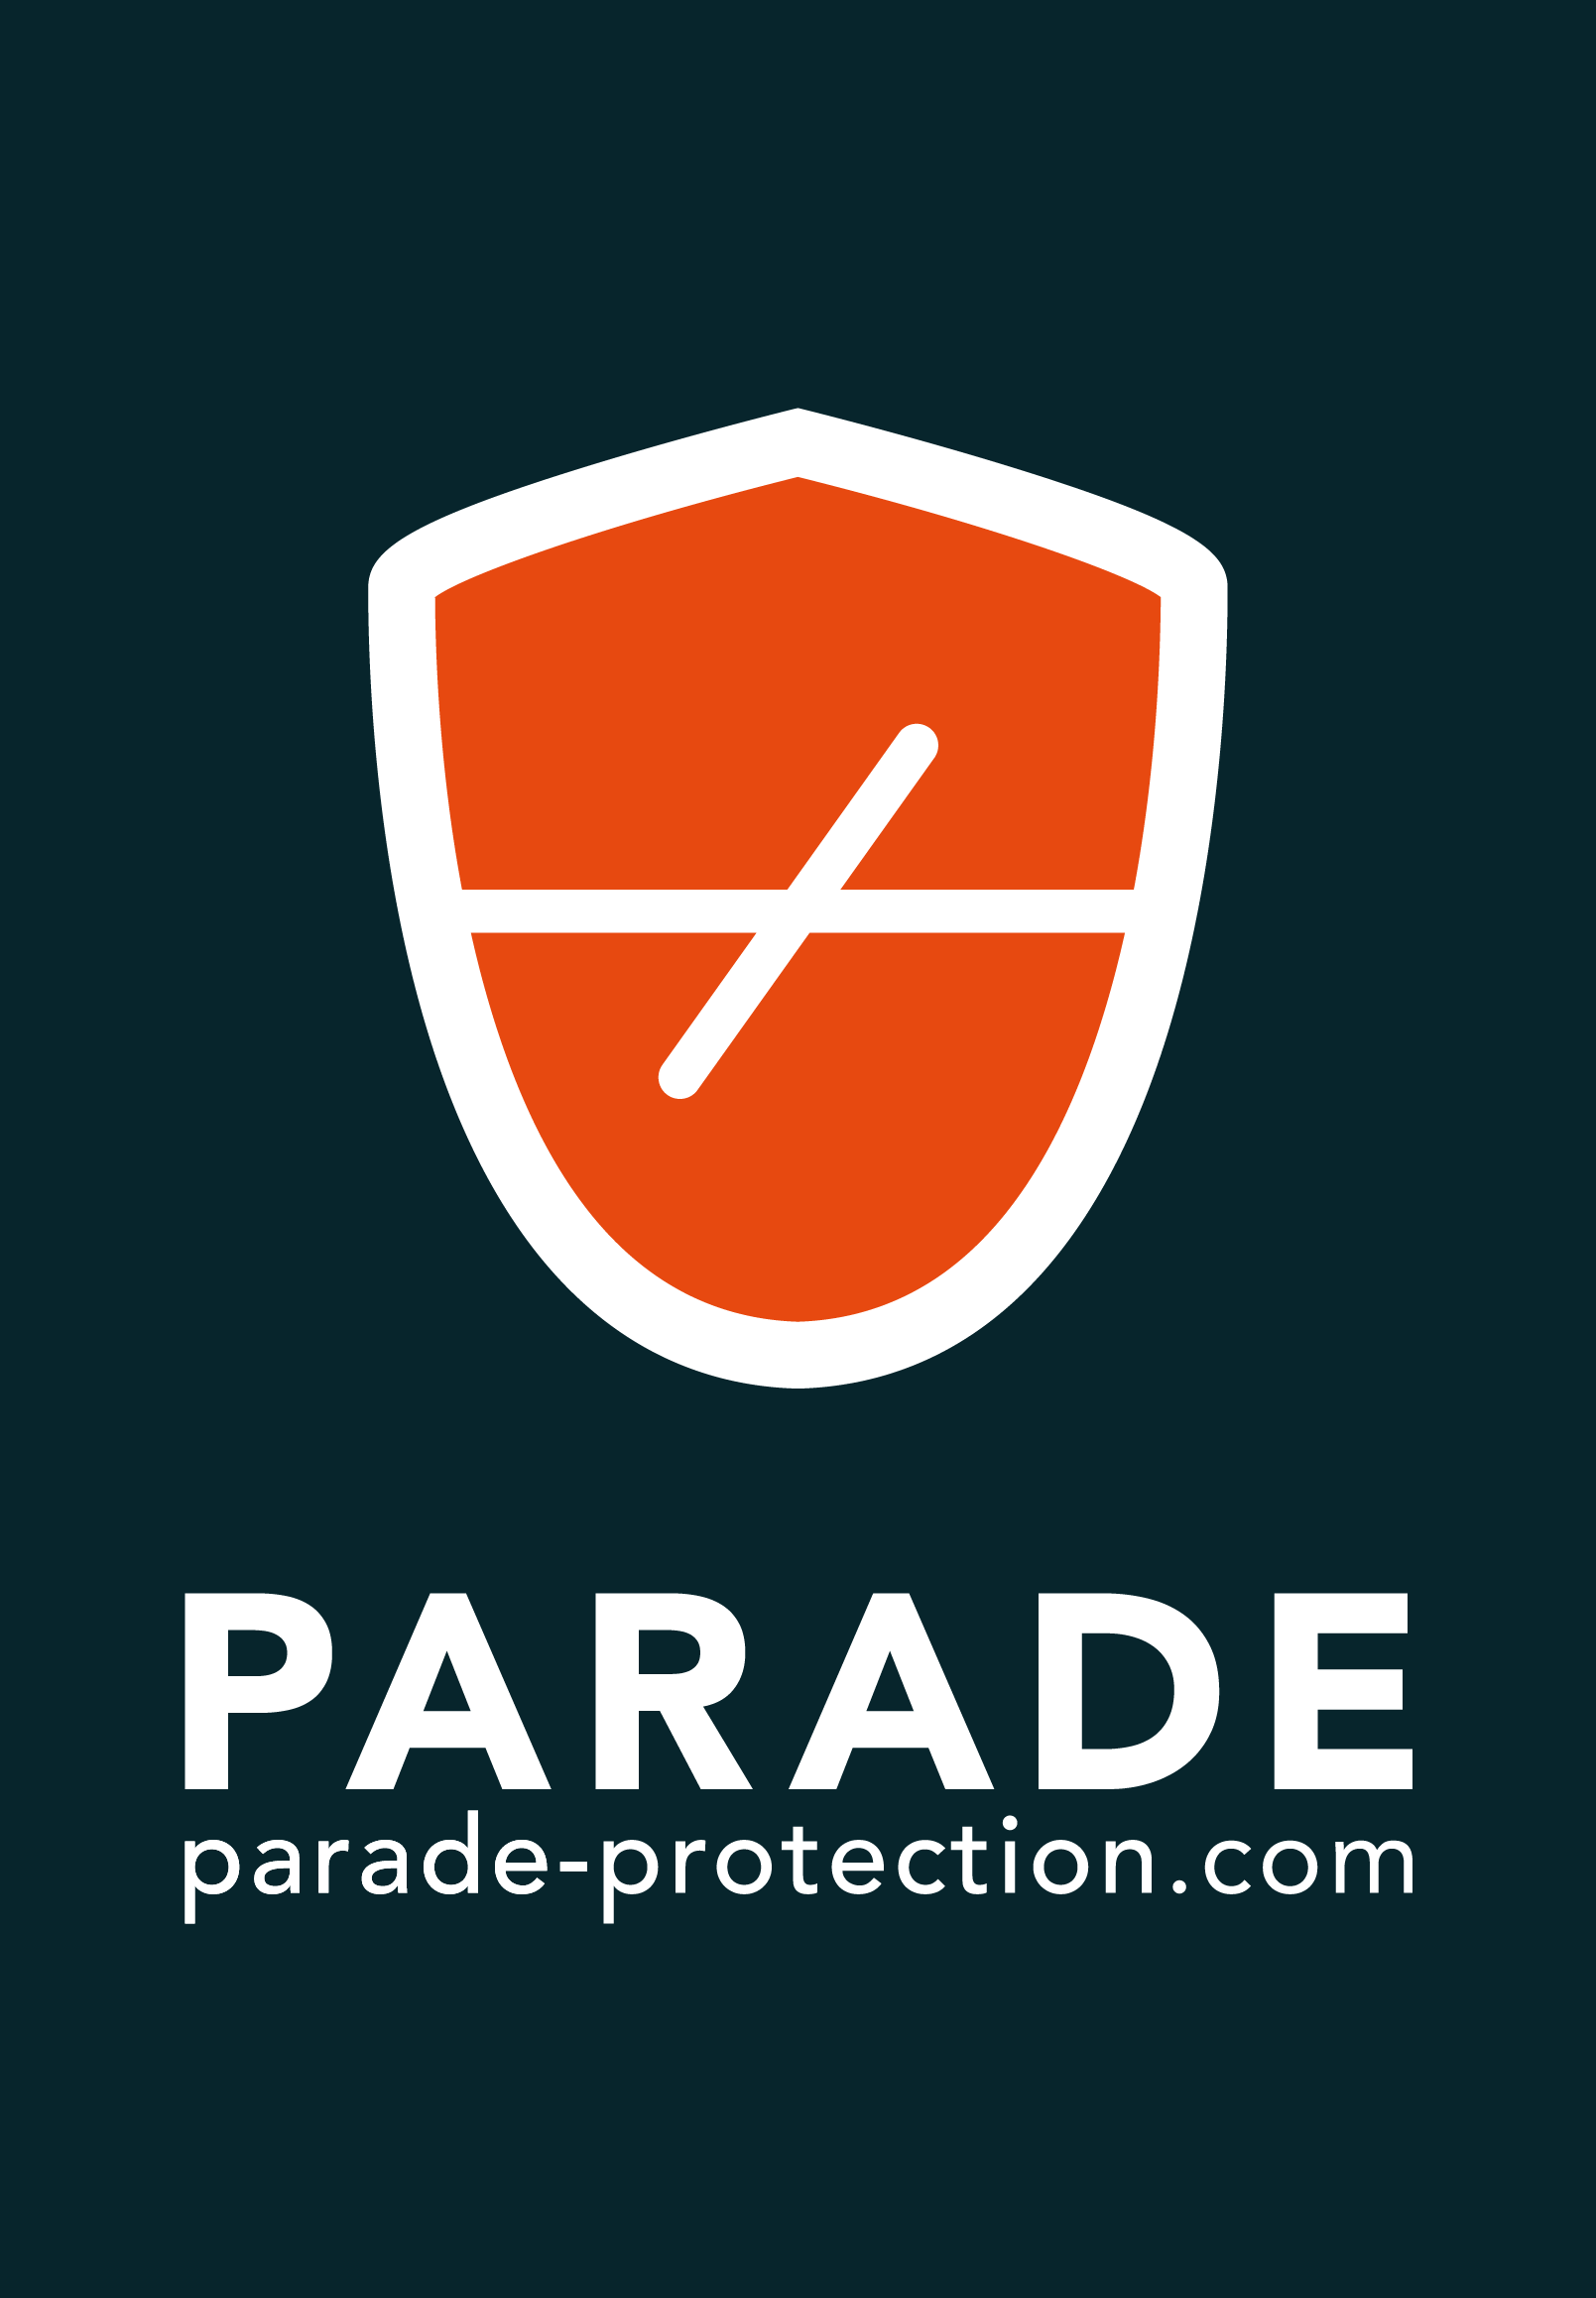 parade